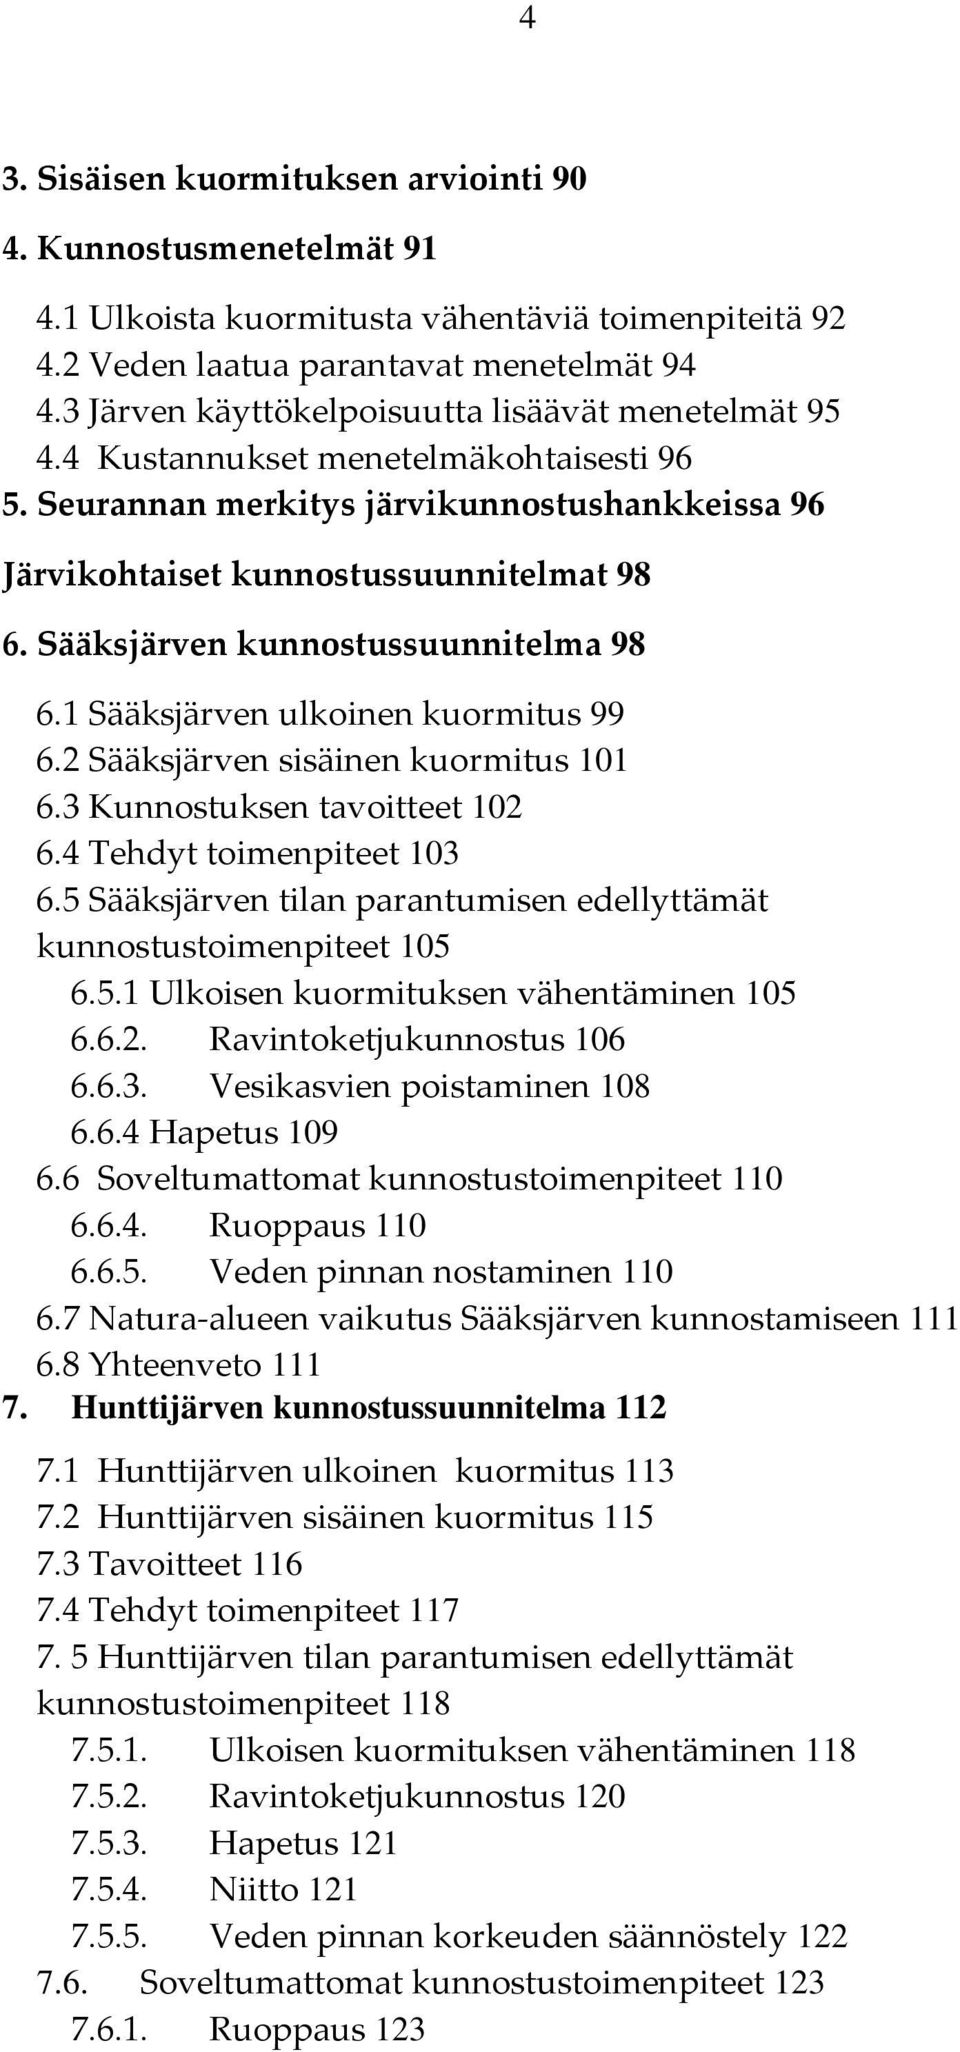 Sääksjärven kunnostussuunnitelma 98 6.1 Sääksjärven ulkoinen kuormitus 99 6.2 Sääksjärven sisäinen kuormitus 101 6.3 Kunnostuksen tavoitteet 102 6.4 Tehdyt toimenpiteet 103 6.